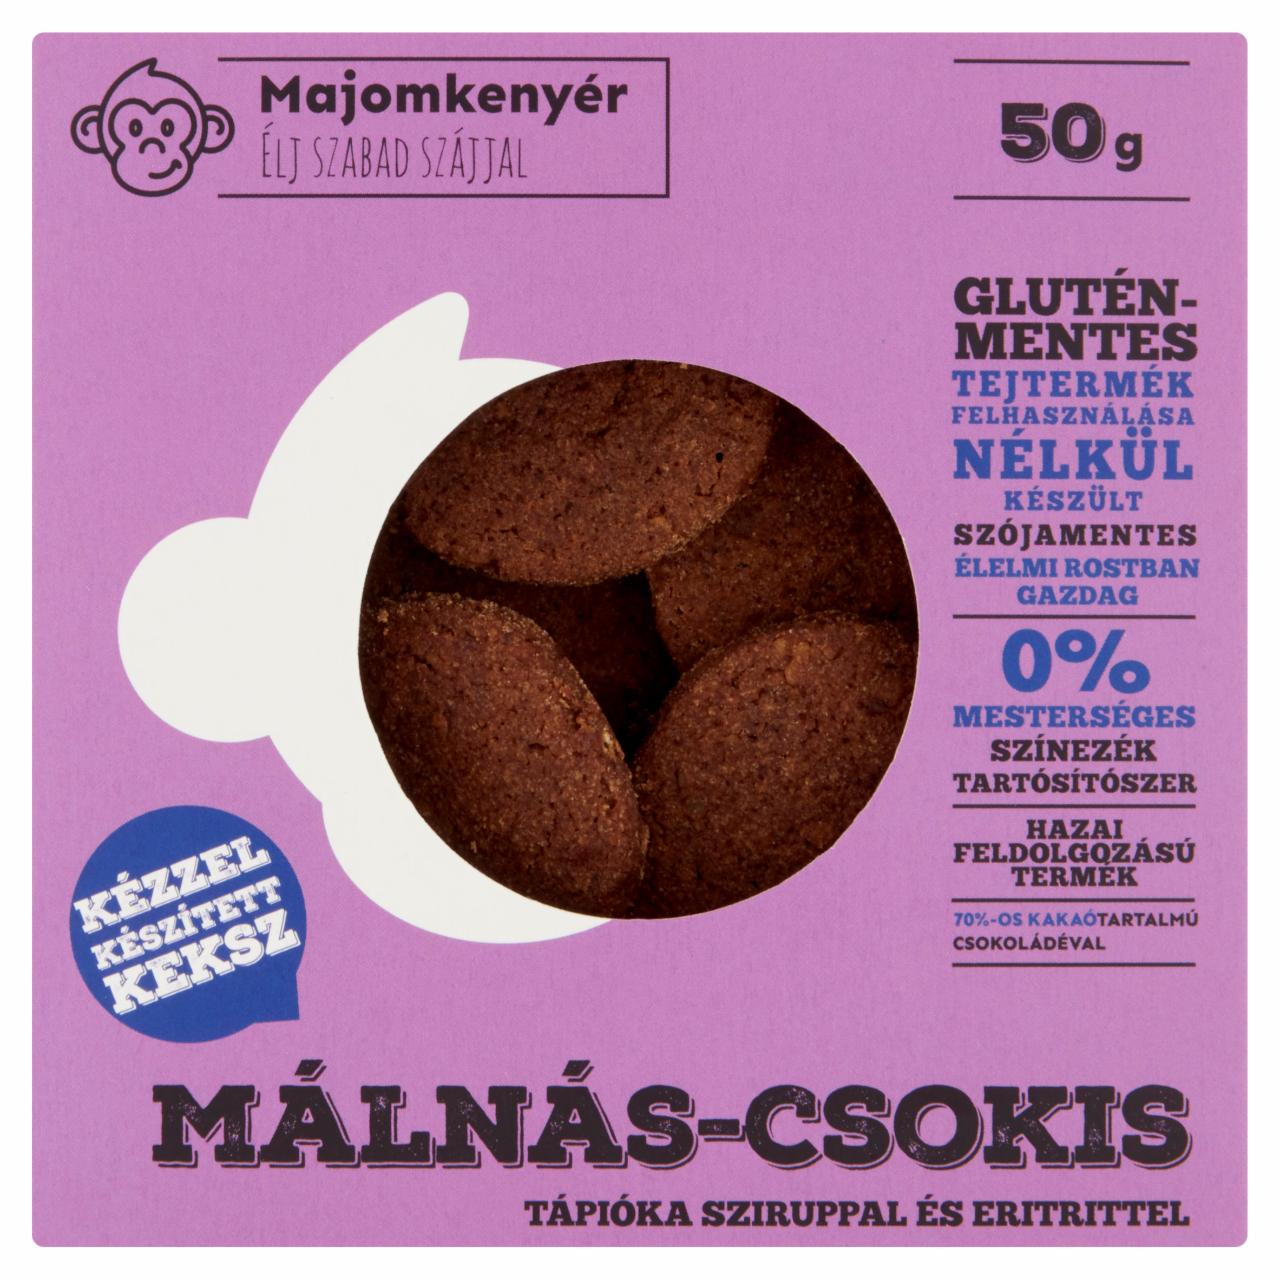 Képek - Majomkenyér málnás-csokis keksz rizssziruppal és édesítőszerekkel 50 g